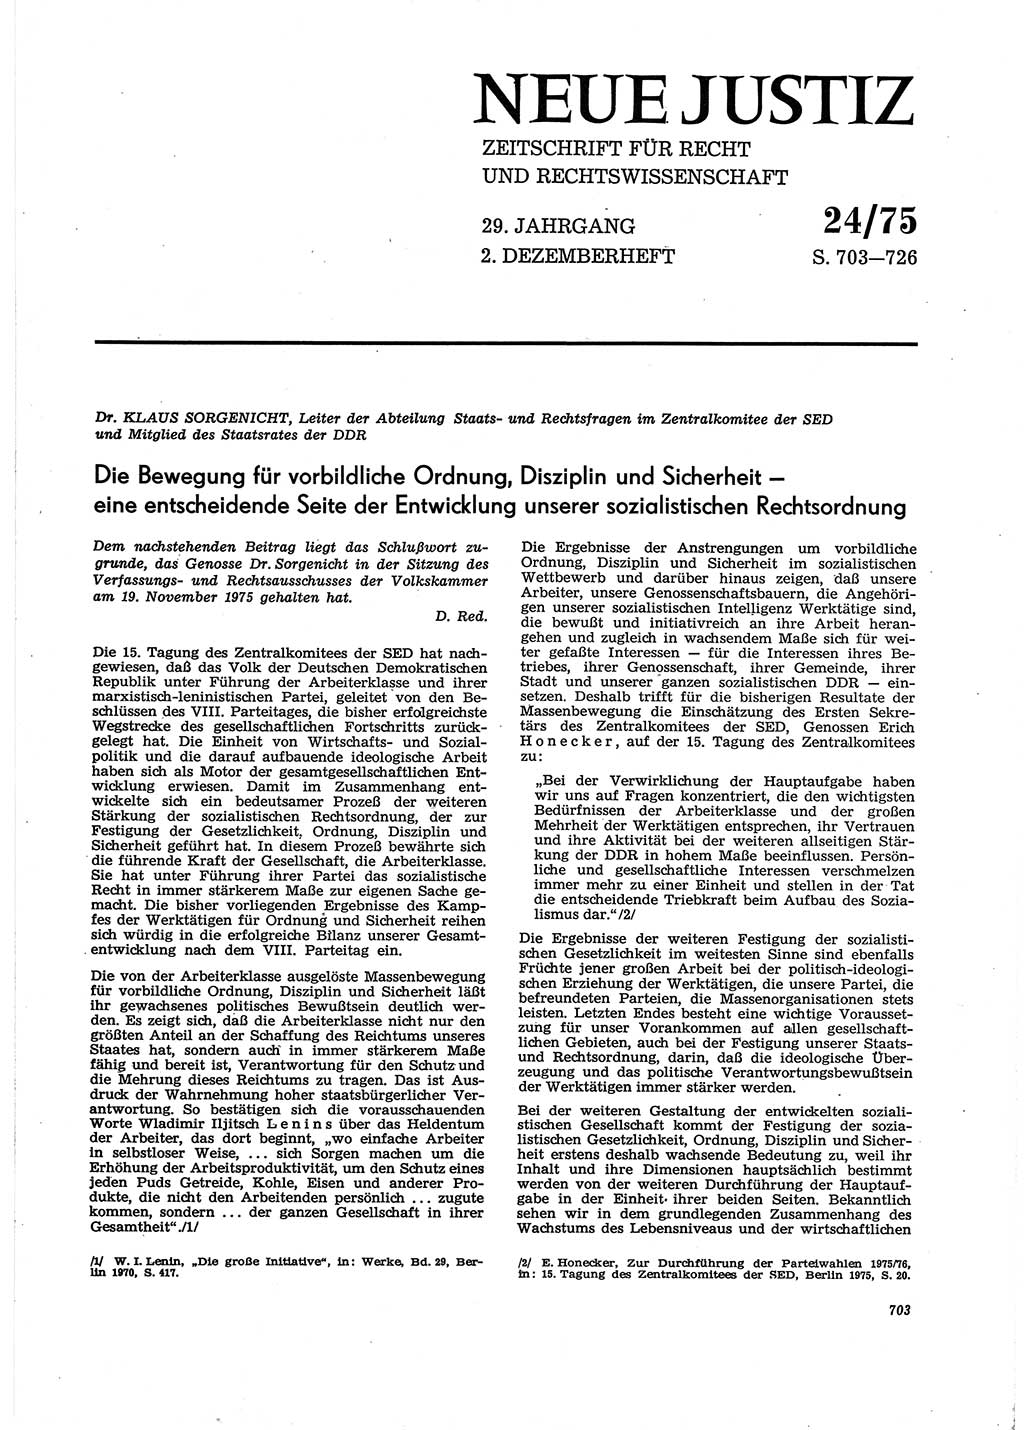 Neue Justiz (NJ), Zeitschrift für Recht und Rechtswissenschaft [Deutsche Demokratische Republik (DDR)], 29. Jahrgang 1975, Seite 703 (NJ DDR 1975, S. 703)